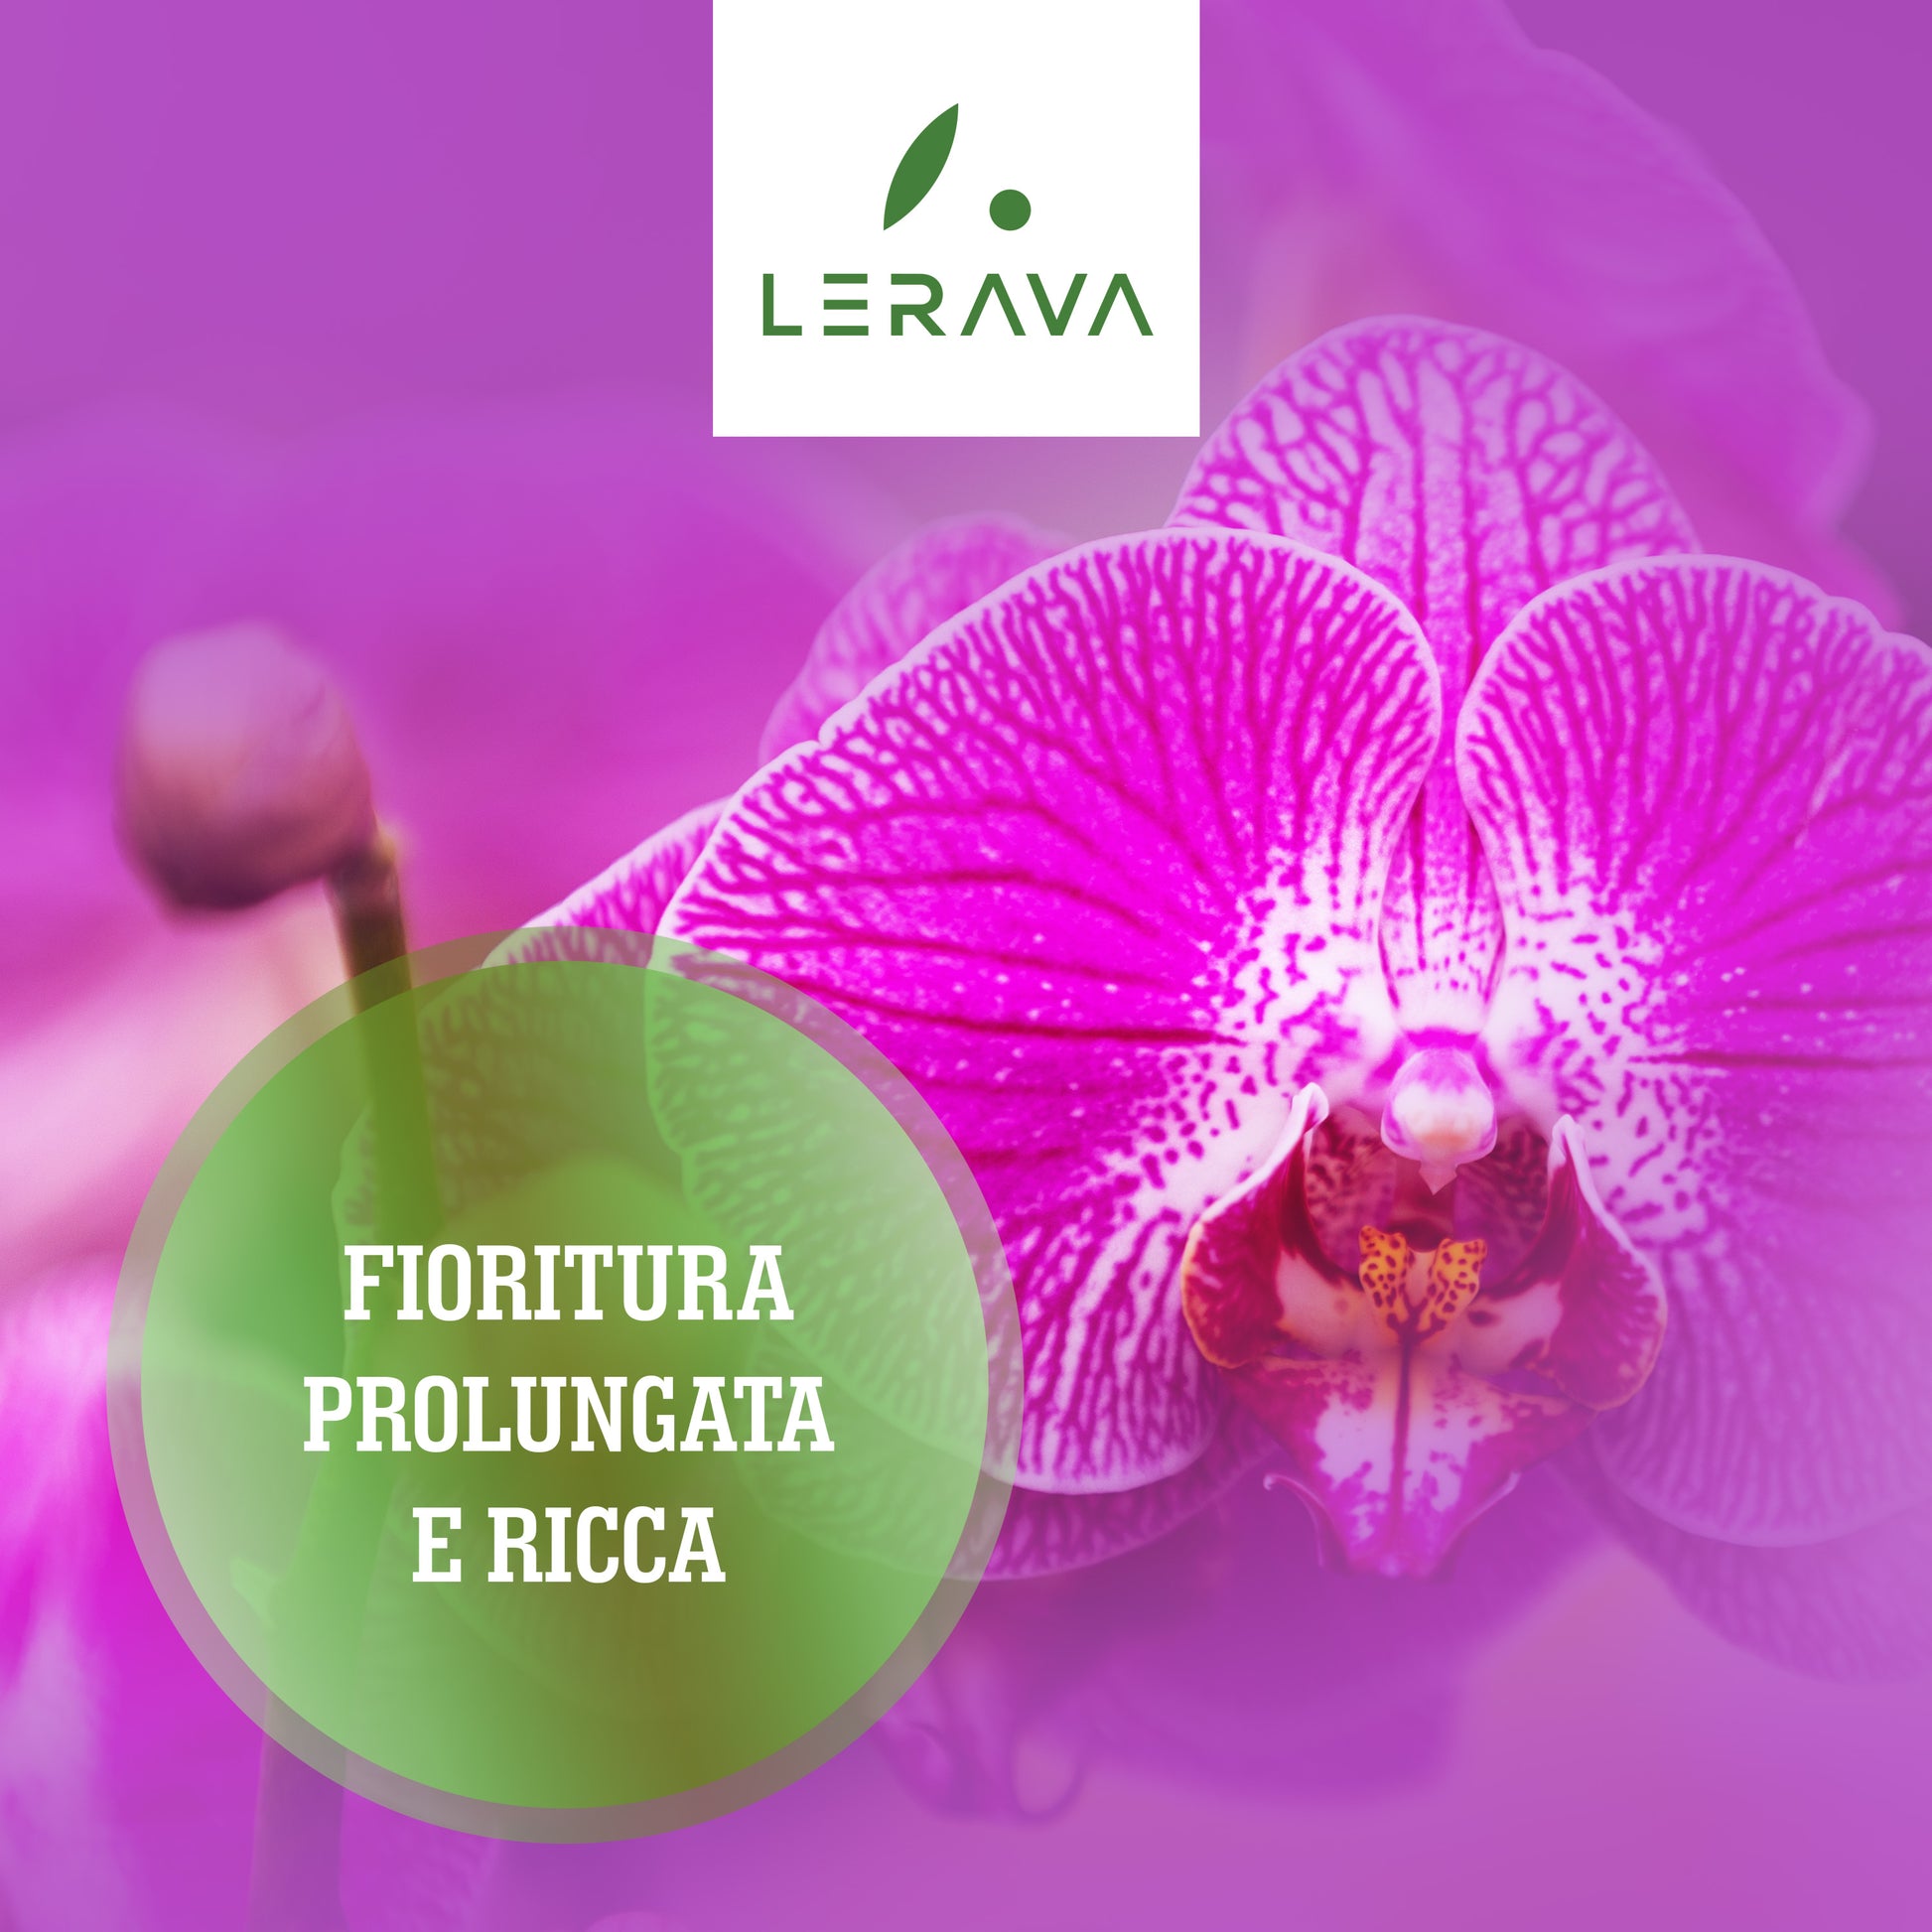 Concime orchidee liquido  AgriService, amore per la terra e cura  dell'ambiente